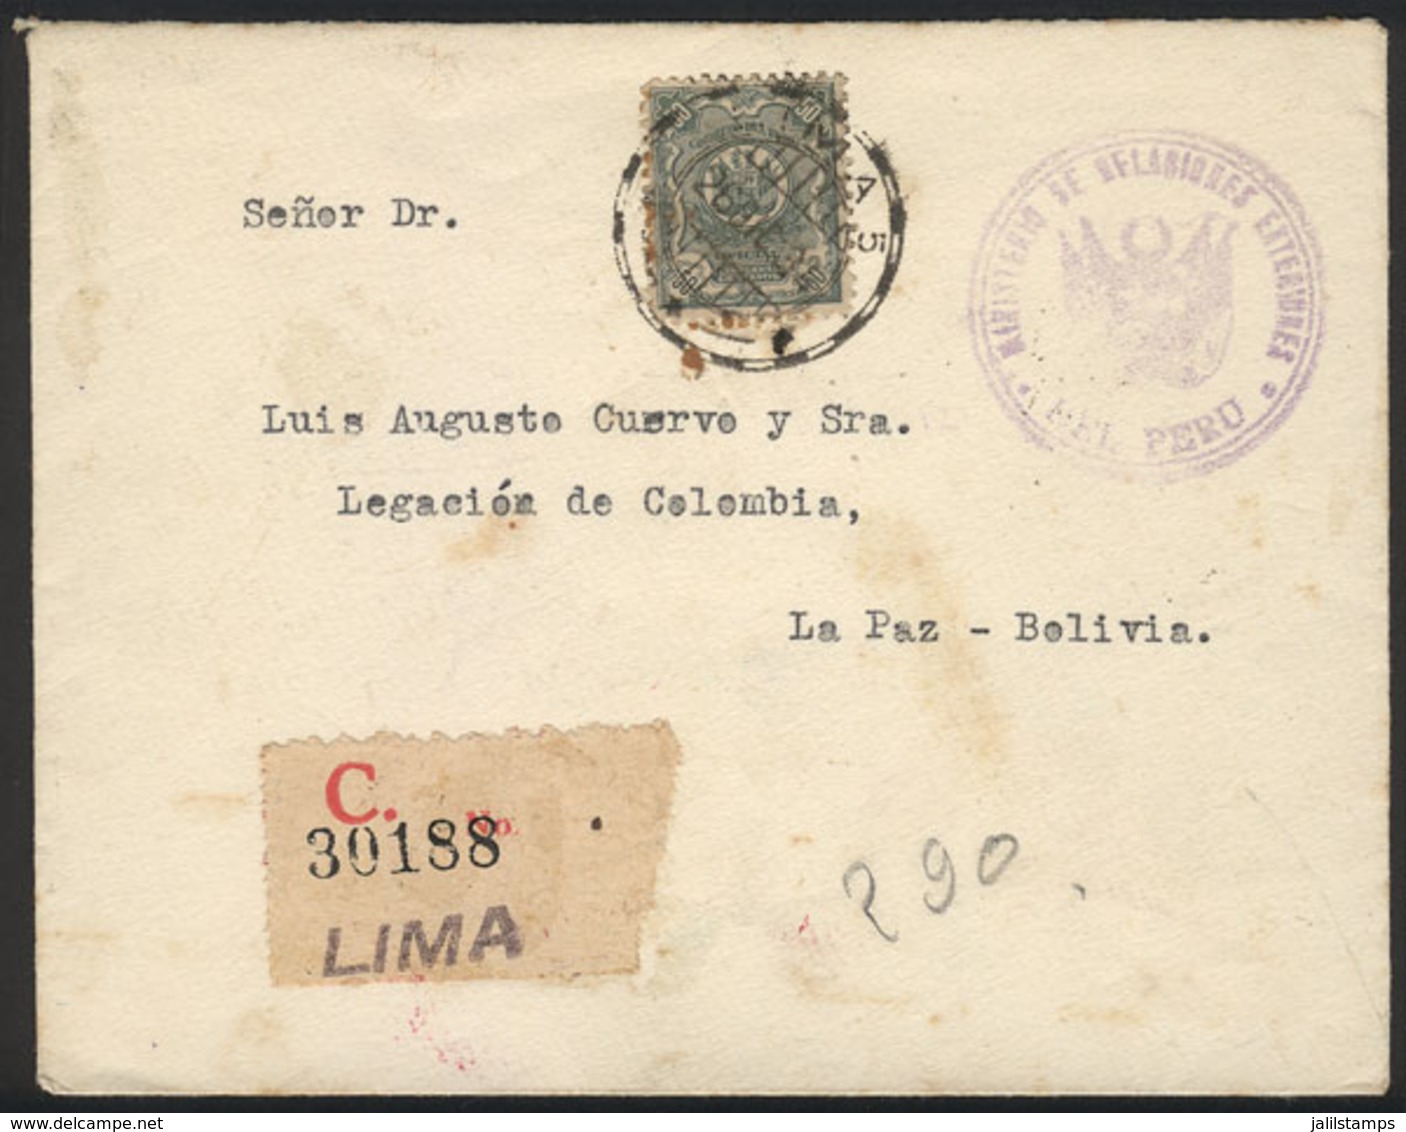 PERU: Registered Cover Franked By Sc.O30, From Lima To Bolivia On 26/DE/1934, VF Quality! - Peru